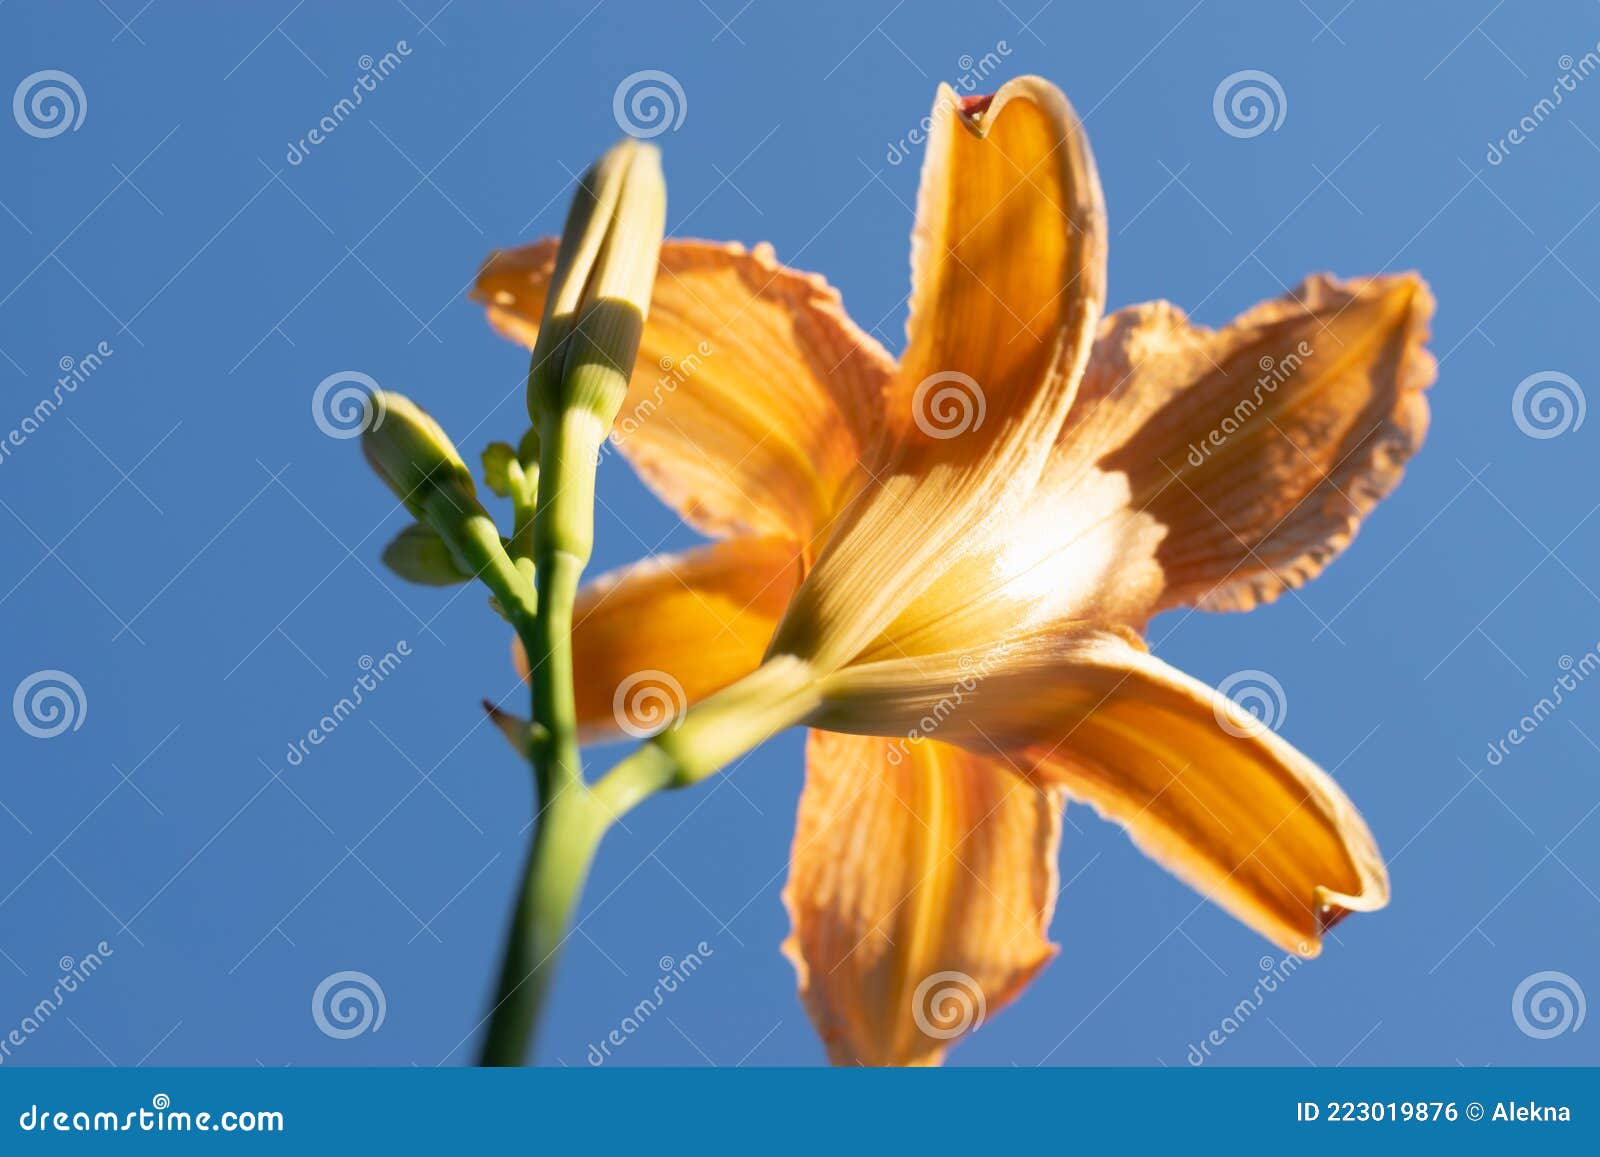 Flor De Lirio En El Jardín. Comúnmente Conocida Como La Estrella Oriental  Lily Foto de archivo - Imagen de cubo, floral: 223019876